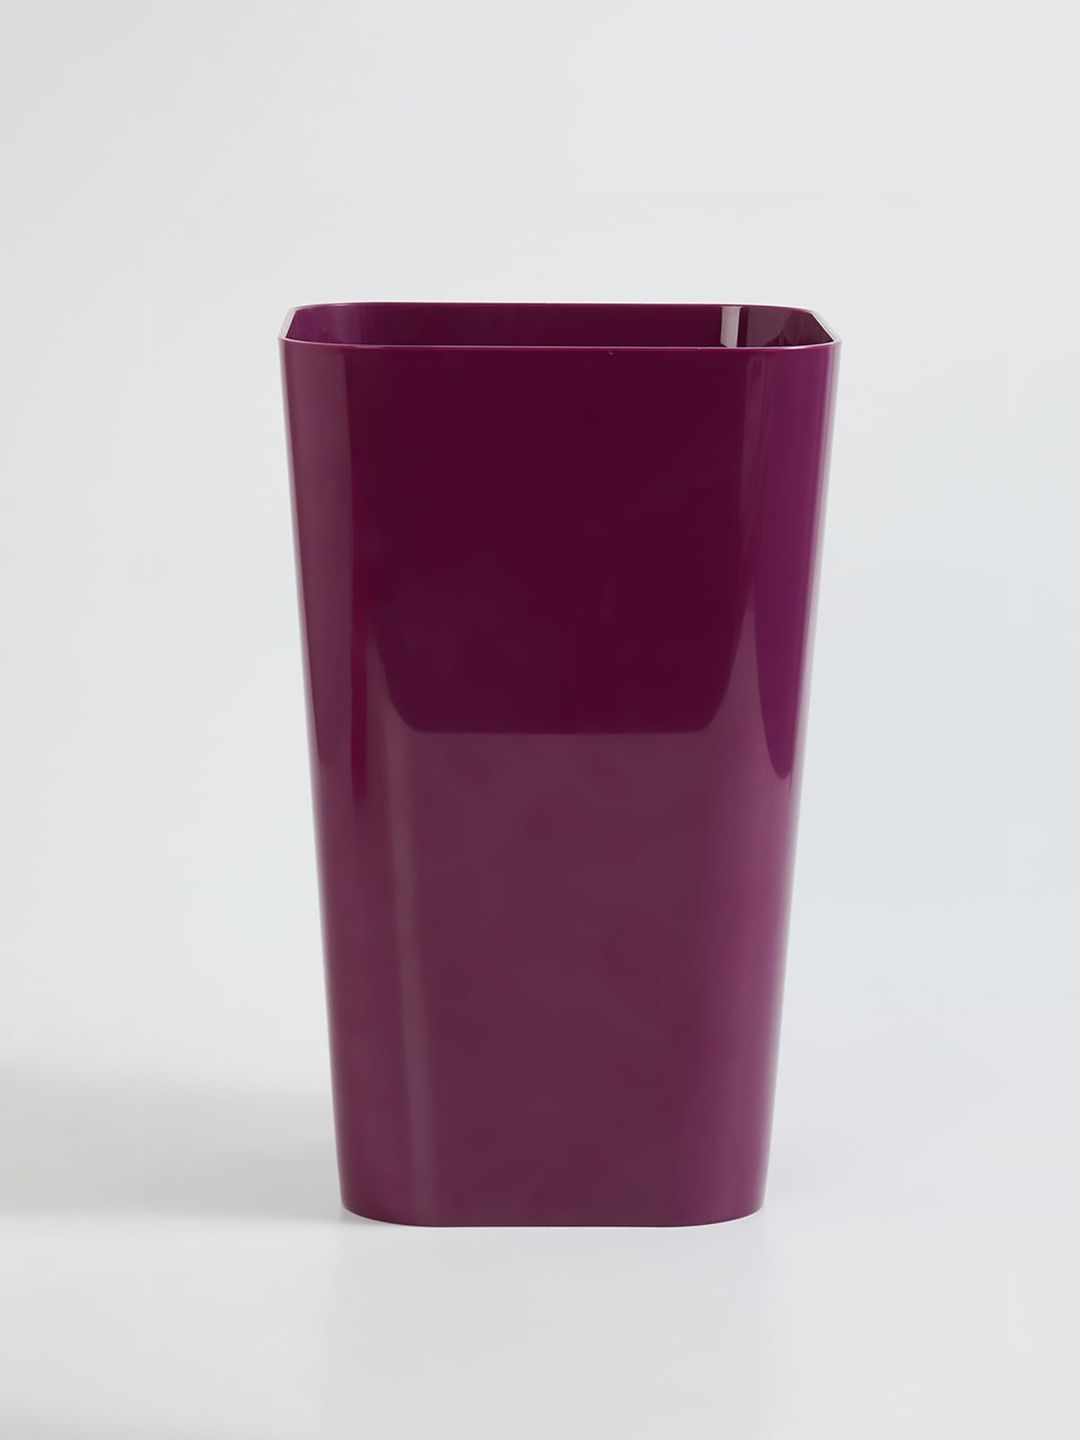 Home Centre Purple Solid Plastic Open Waste Bin Price in India